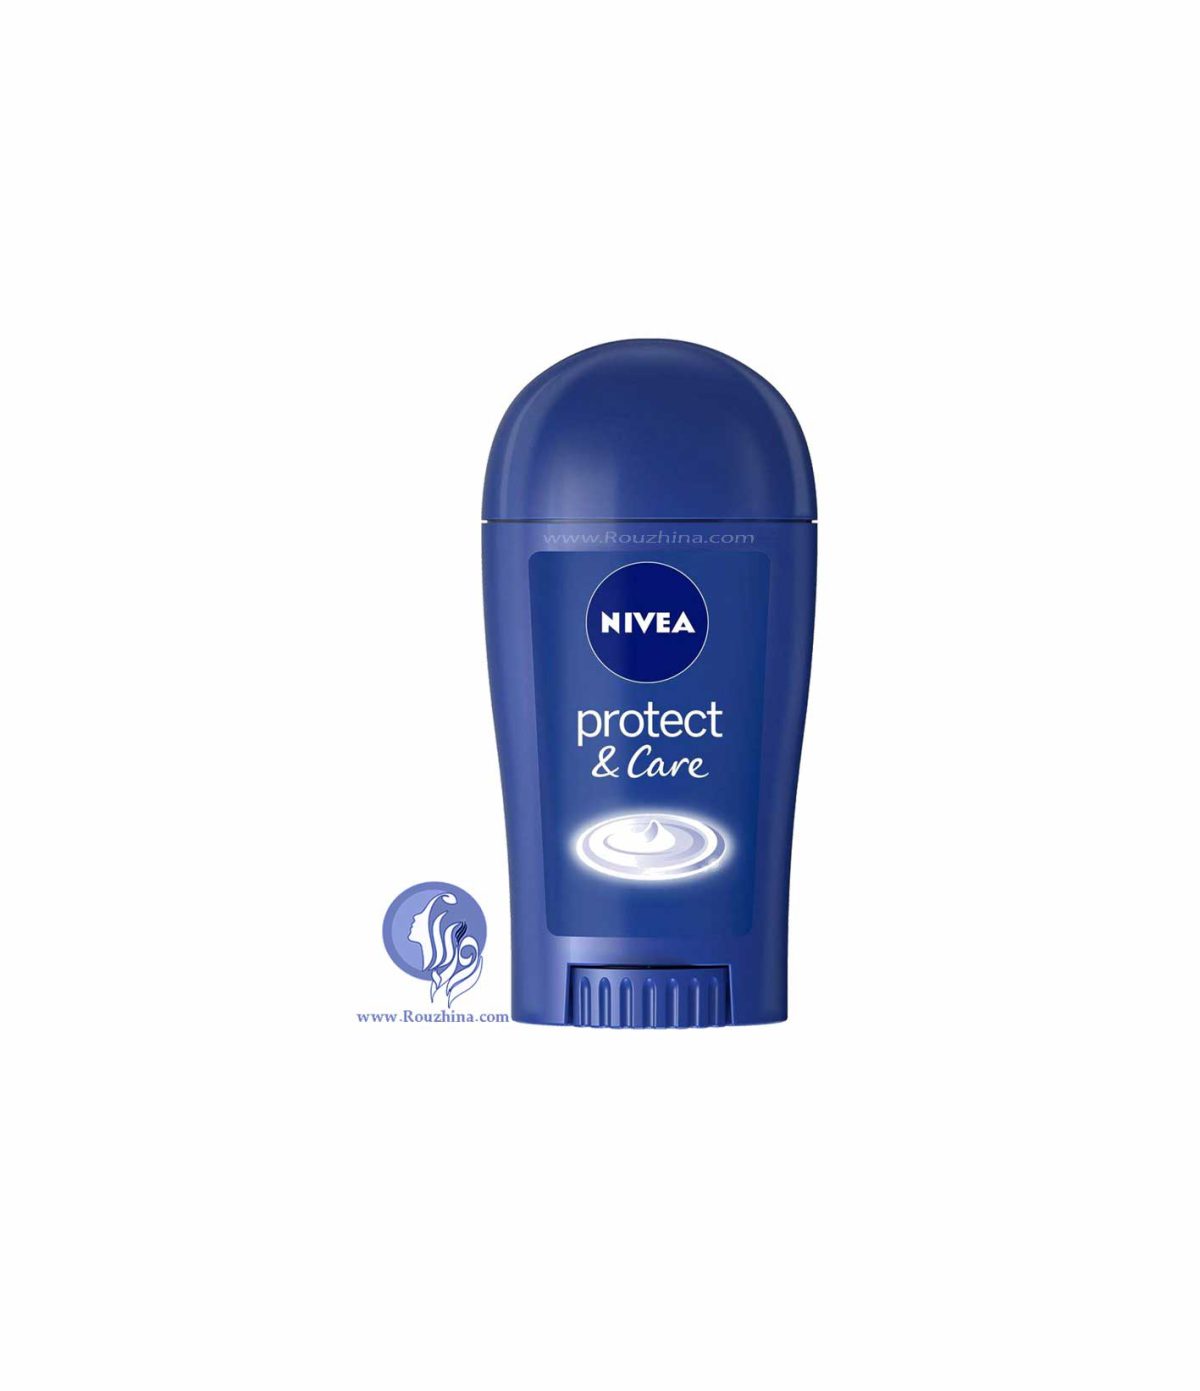 فروش مام صابونی استیک ضد تعریق زنانه نیوا مدل پروتکت اند کر : Nivea Protect & Care Stick Deodorant For Women